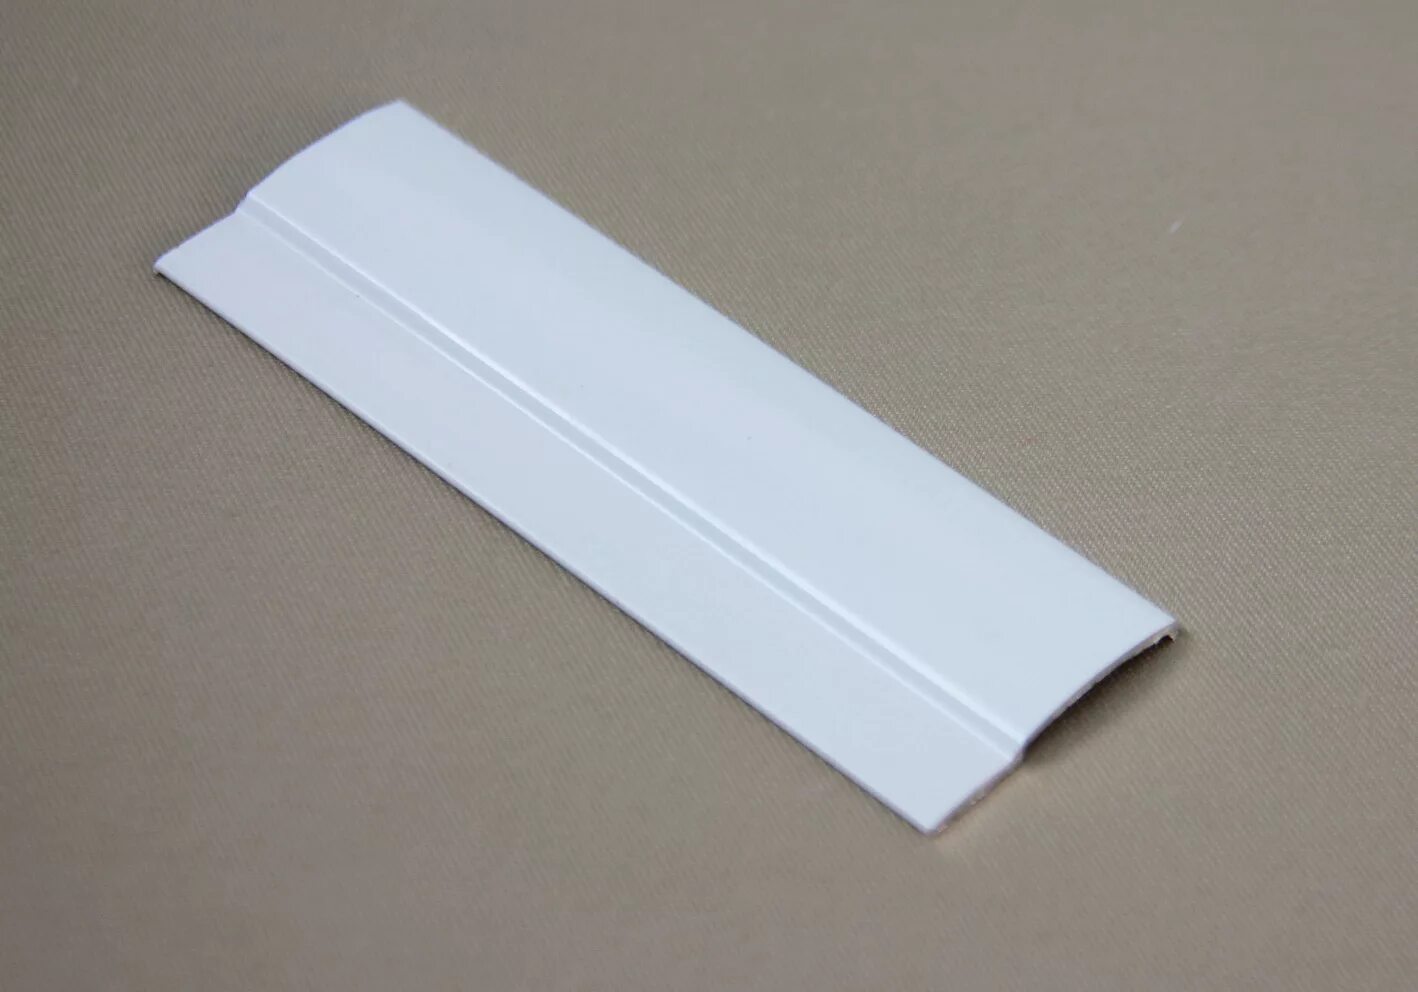 Направляющая 1м. Направляющая плоская алюминиевая Uni 1 l=4 м белая (алюминий). Направляющая плоская Uni 1. Направляющая плоская Uni 1 l=4 м белая. Направляющая плоская алюминиевая Uni 1.